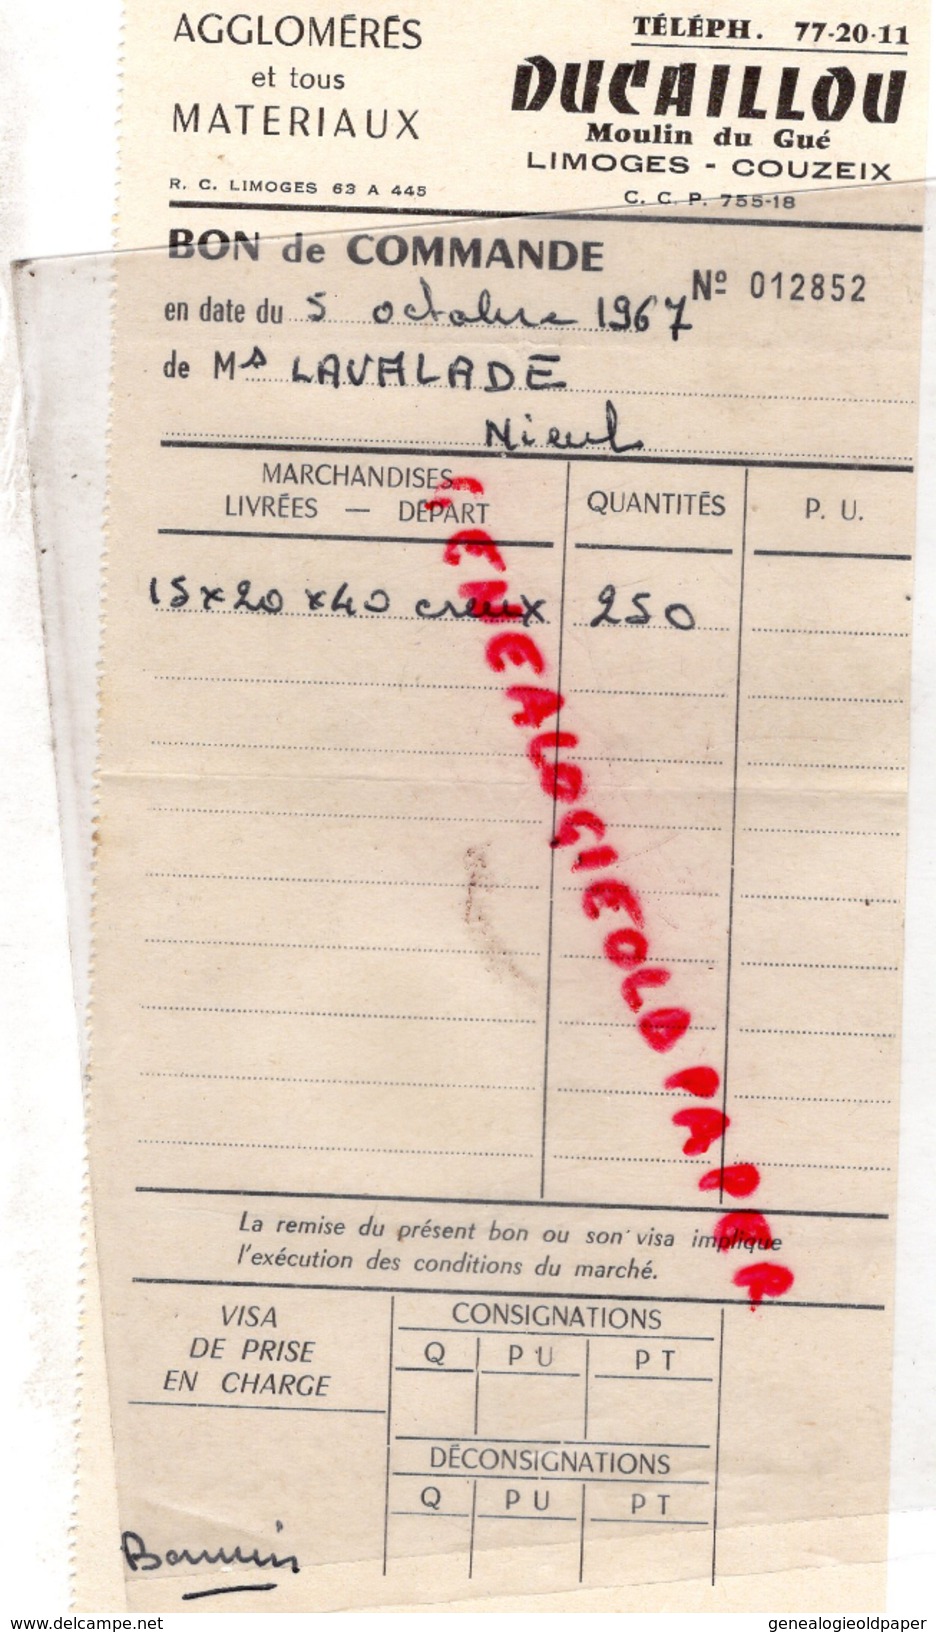 87 - COUZEIX LIMOGES - FACTURE DUCAILLOU - MOULIN DU GUE - AGGLOMERES ET MATERIAUX  1967 - 1950 - ...